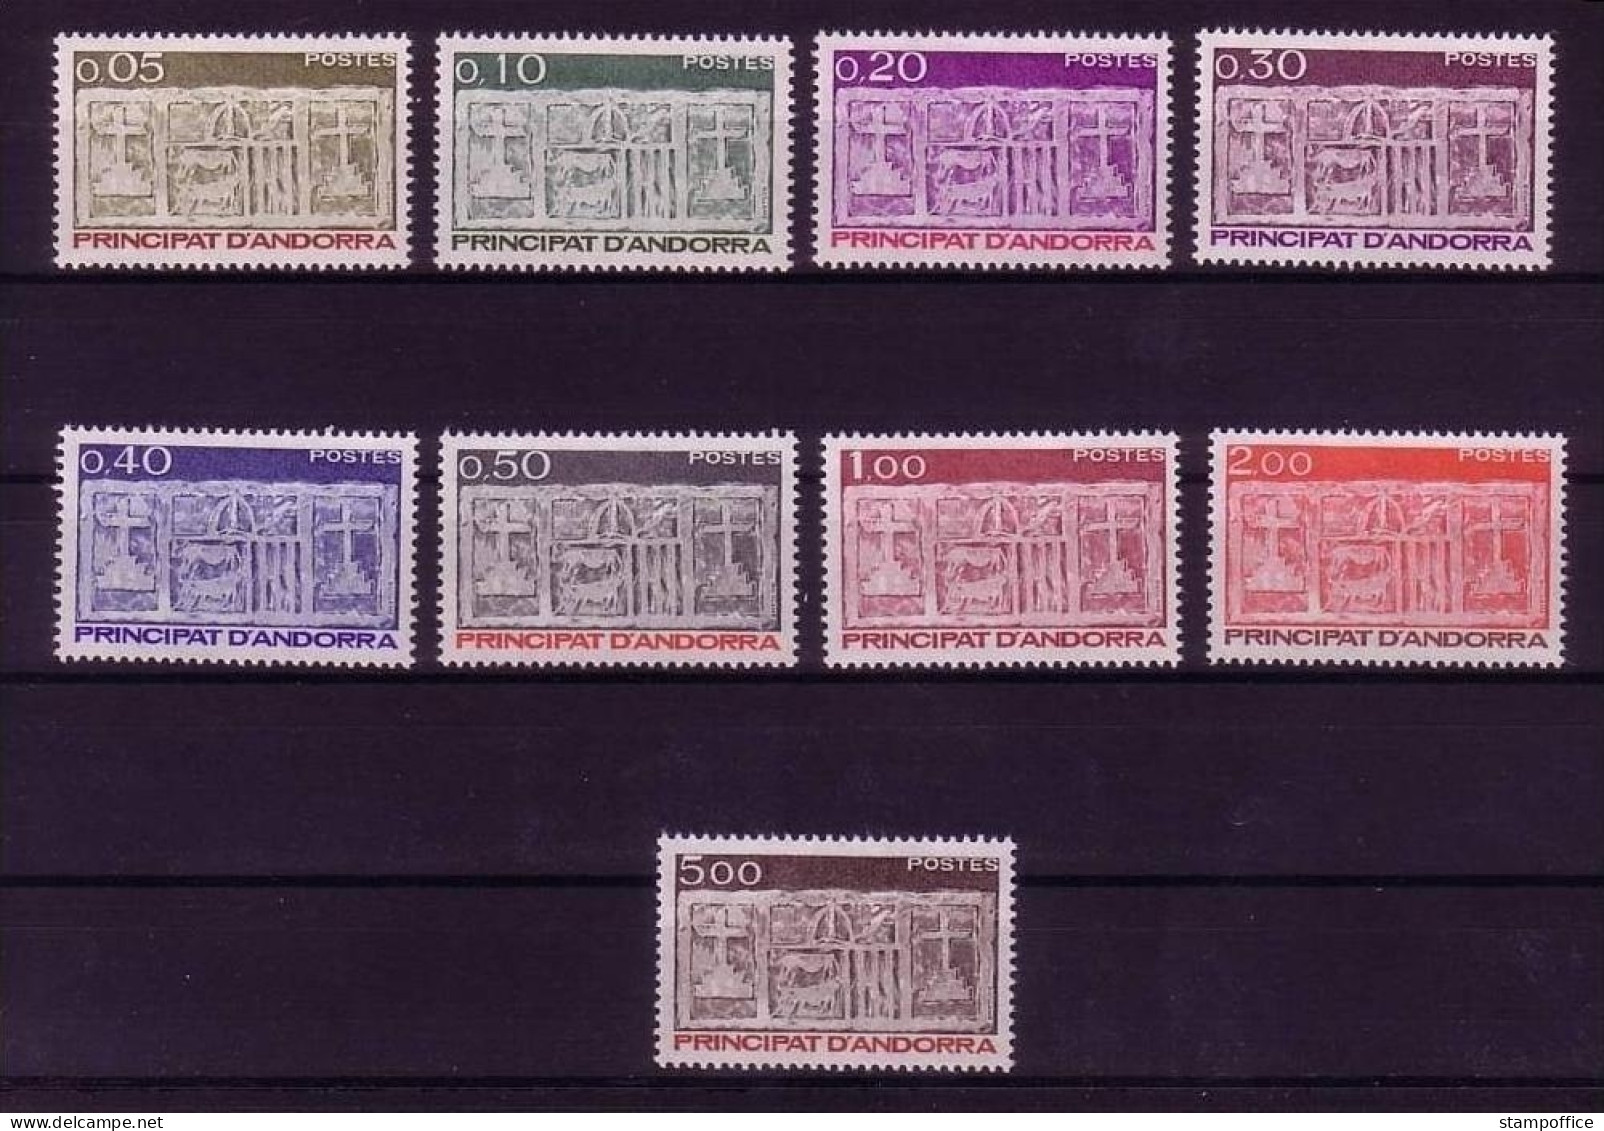 ANDORRA FRANZÖSISCH MI-NR. 337-345 POSTFRISCH(MINT) FREIMARKEN WAPPEN 1983 - Briefmarken